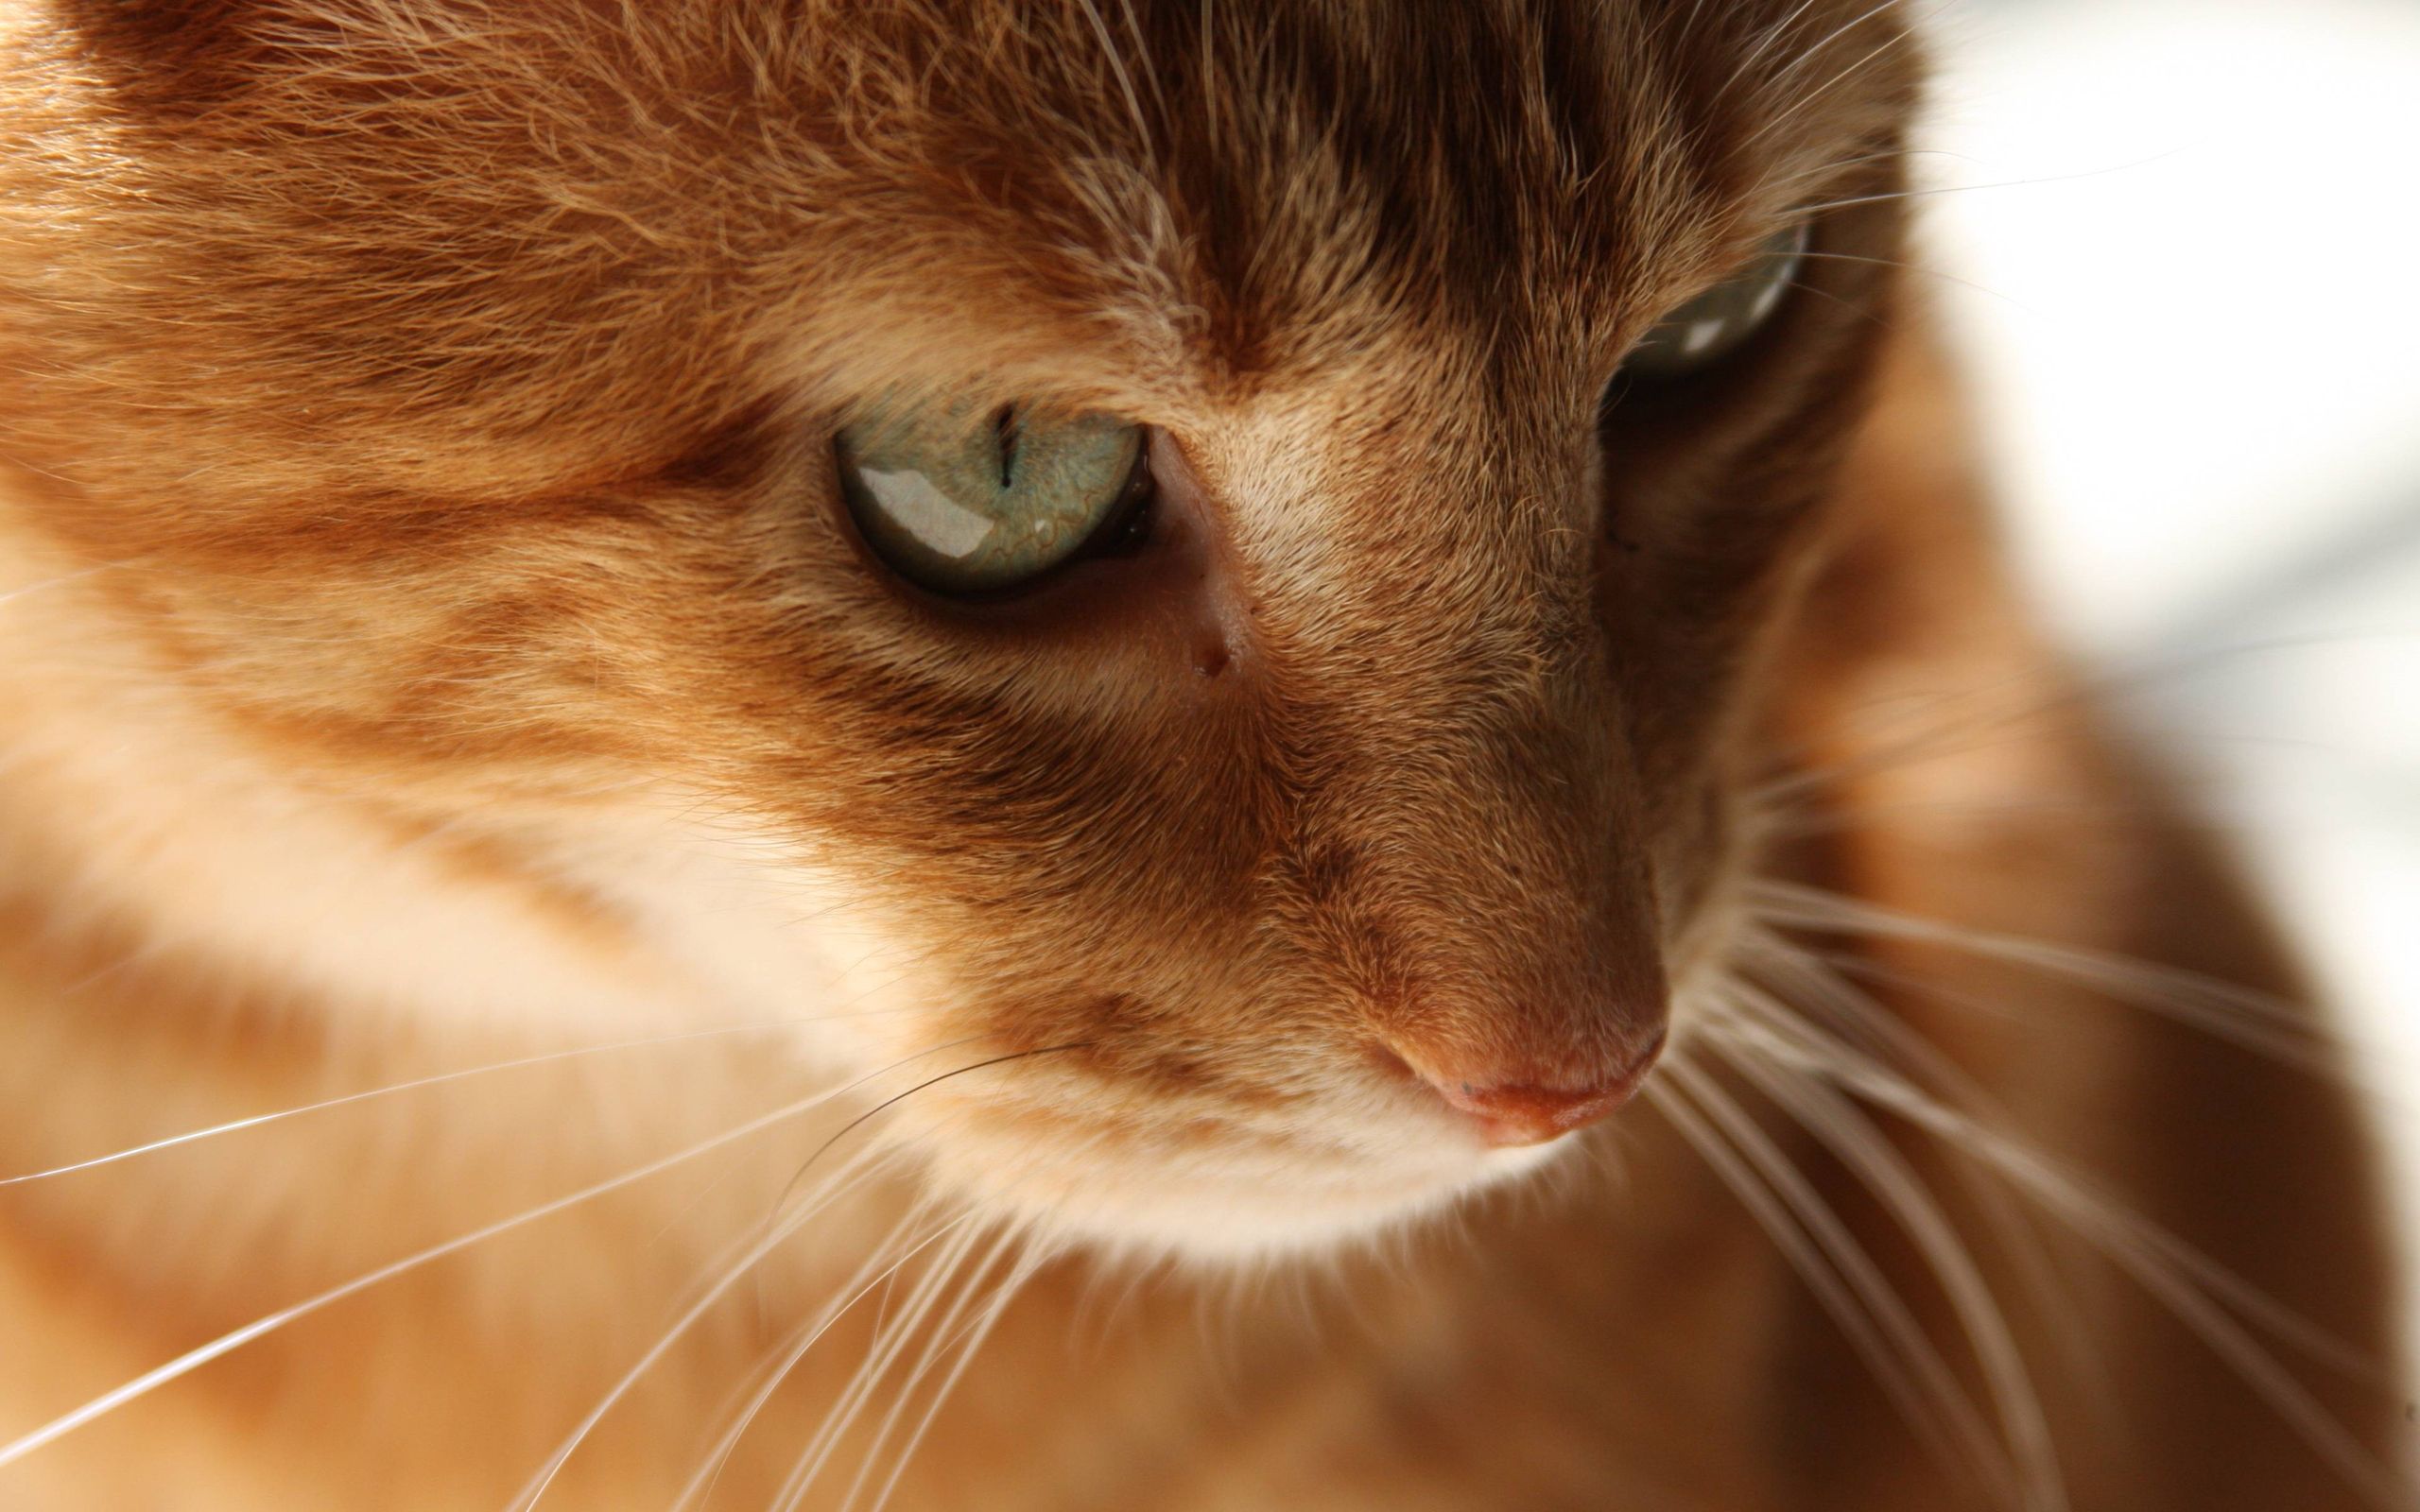 گربه نارنجی باهوش و جدی در یک نمای هنری خاص